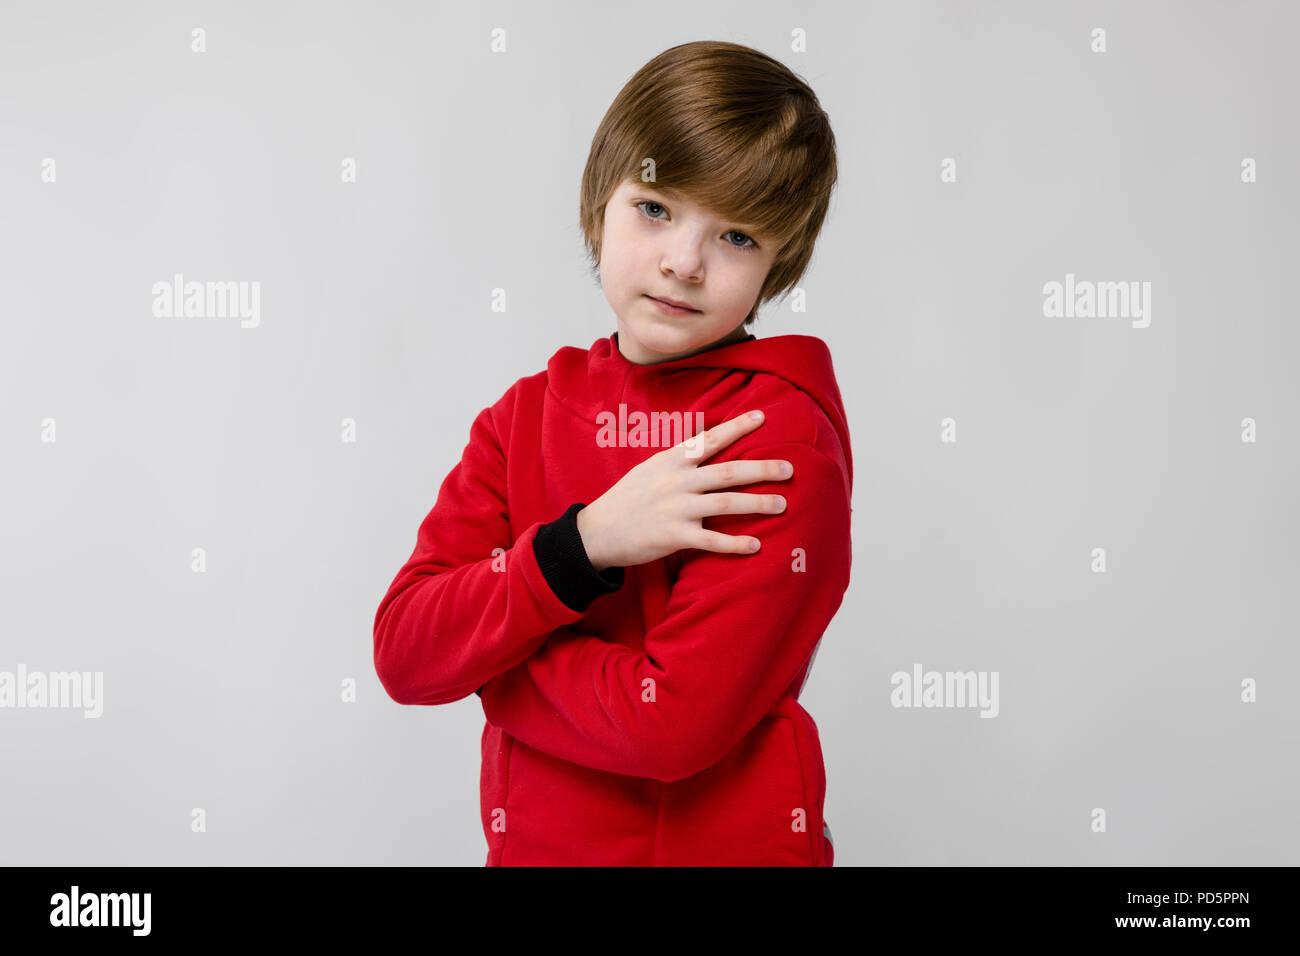 Cute zuversichtlich ernste kaukasischen kleinen Jungen in roten Pullover  mit verschränkten Armen auf grauem Hintergrund Stockfotografie - Alamy